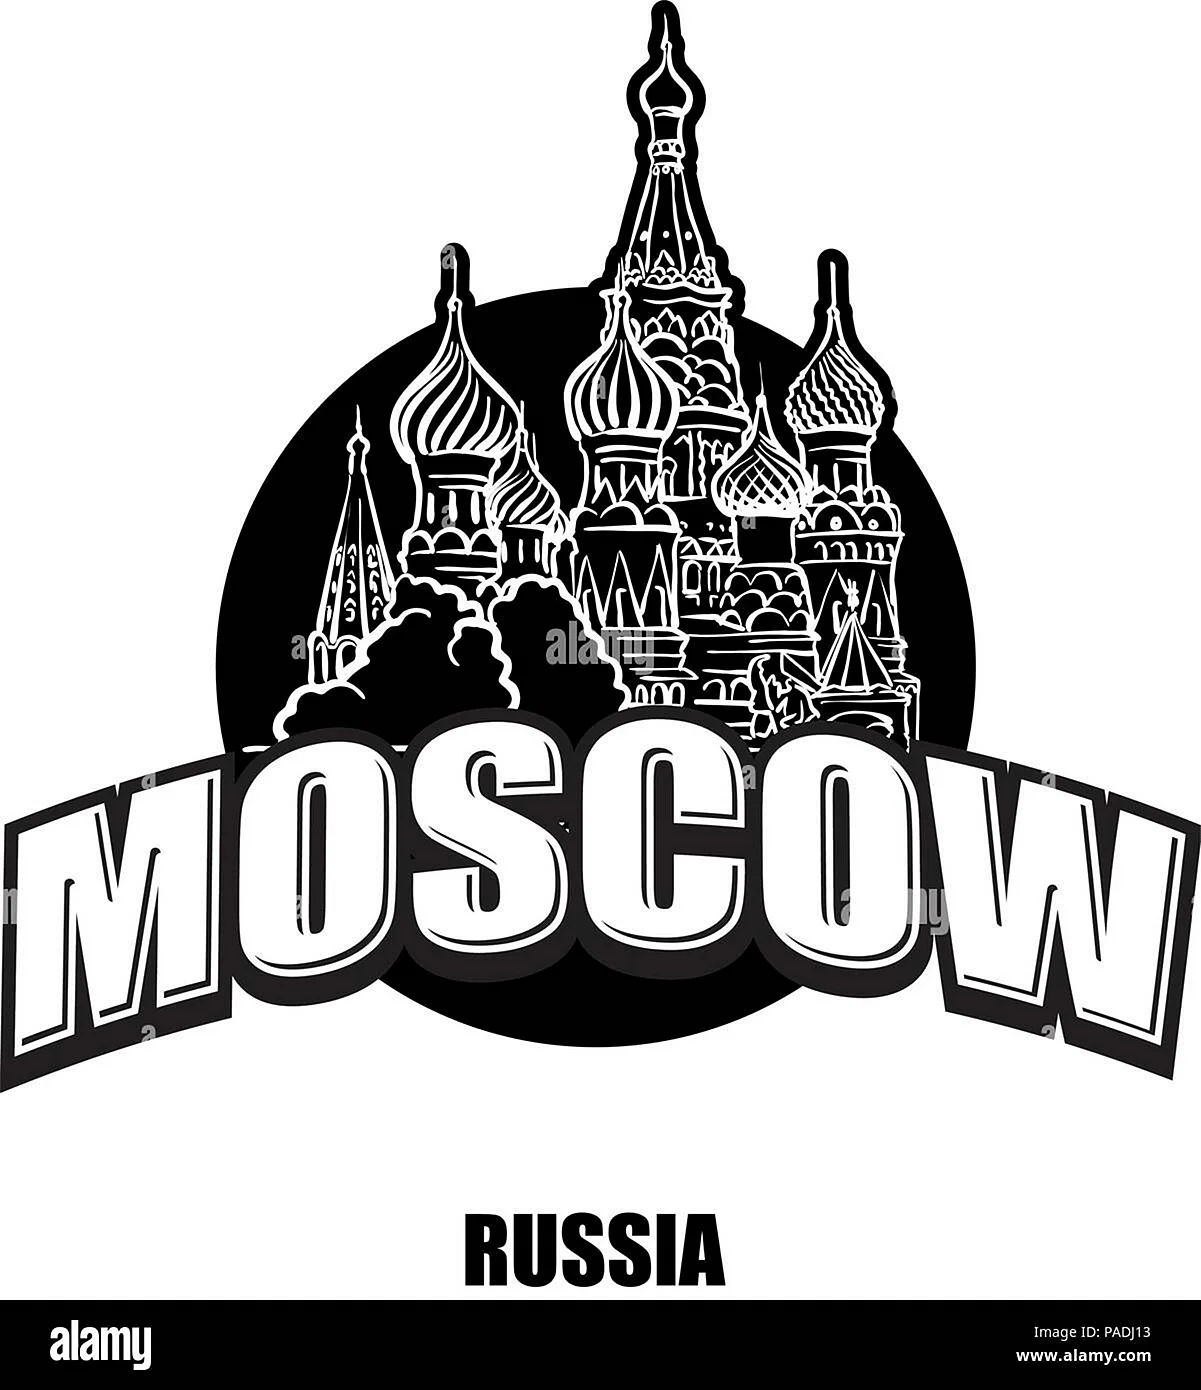 Логотип Москвы чб